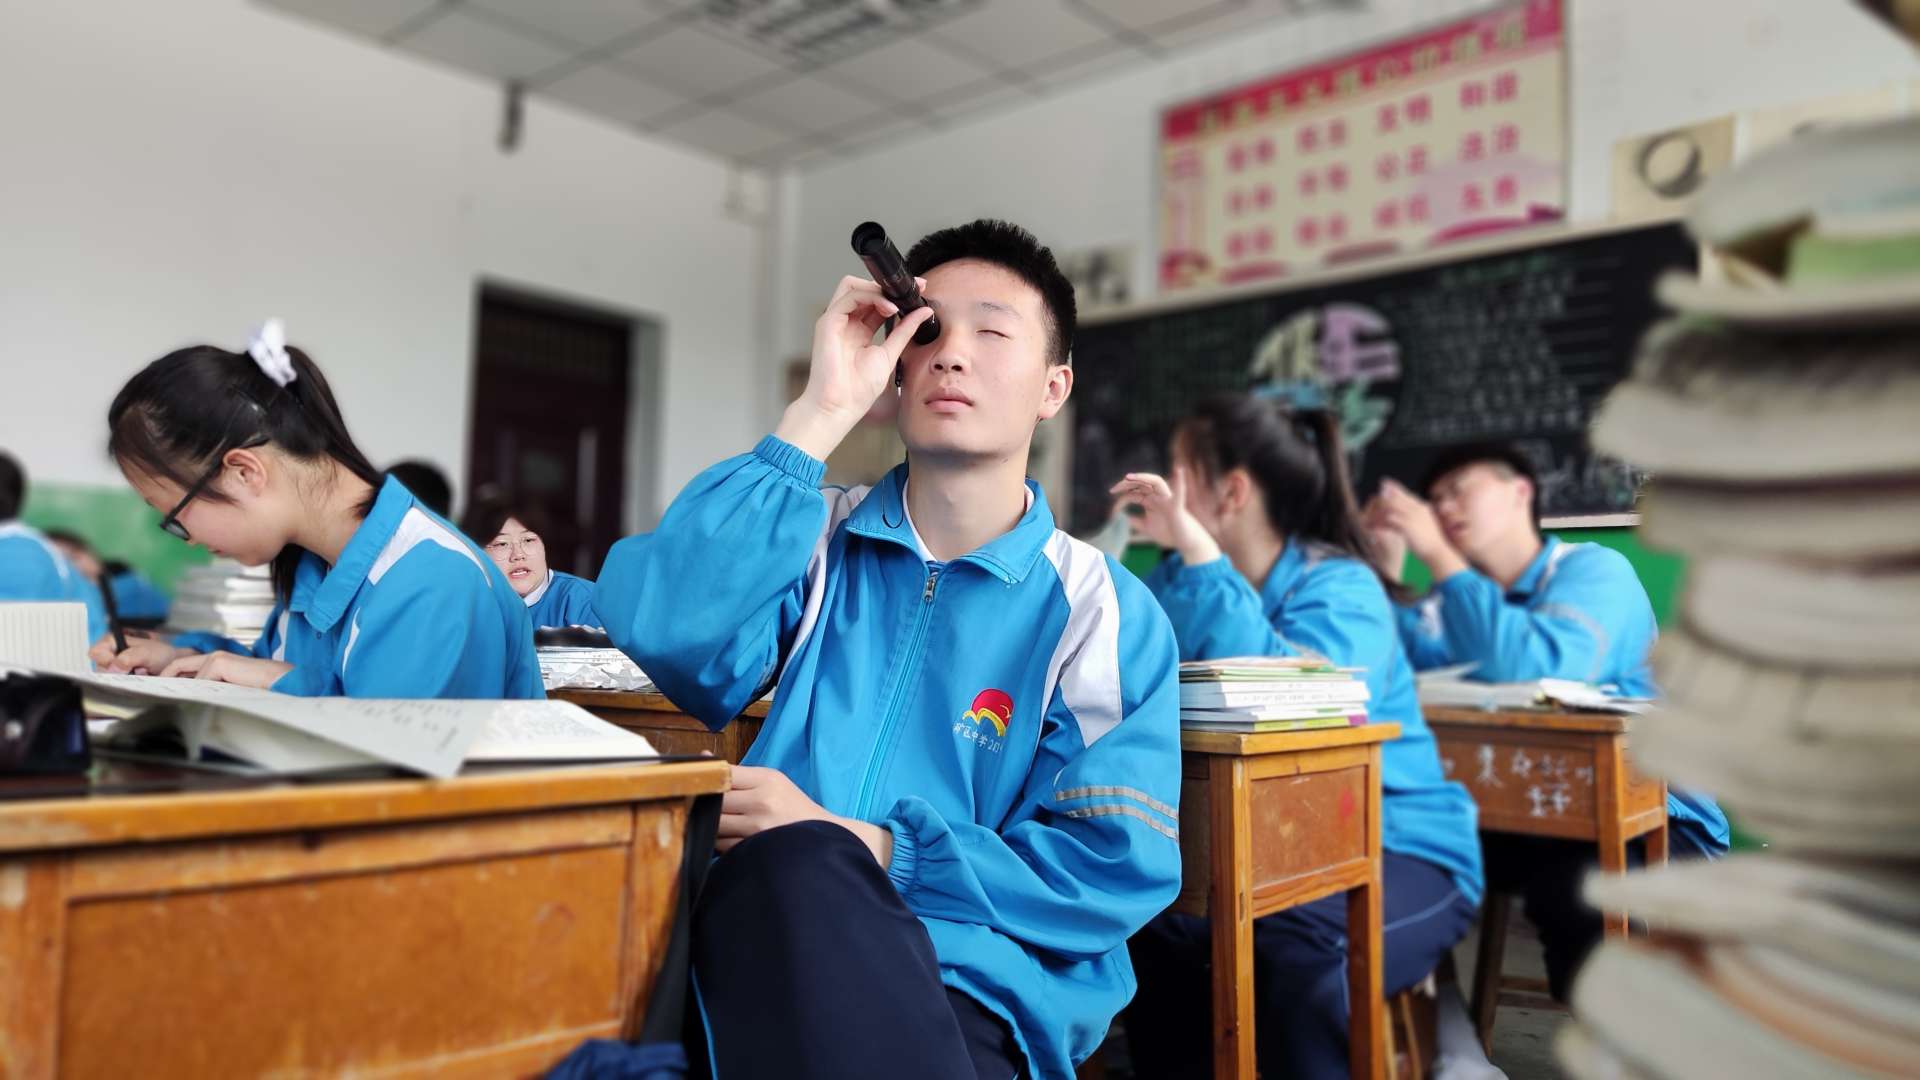 晋城市矿区中学-《未成年人保护法》宣传片